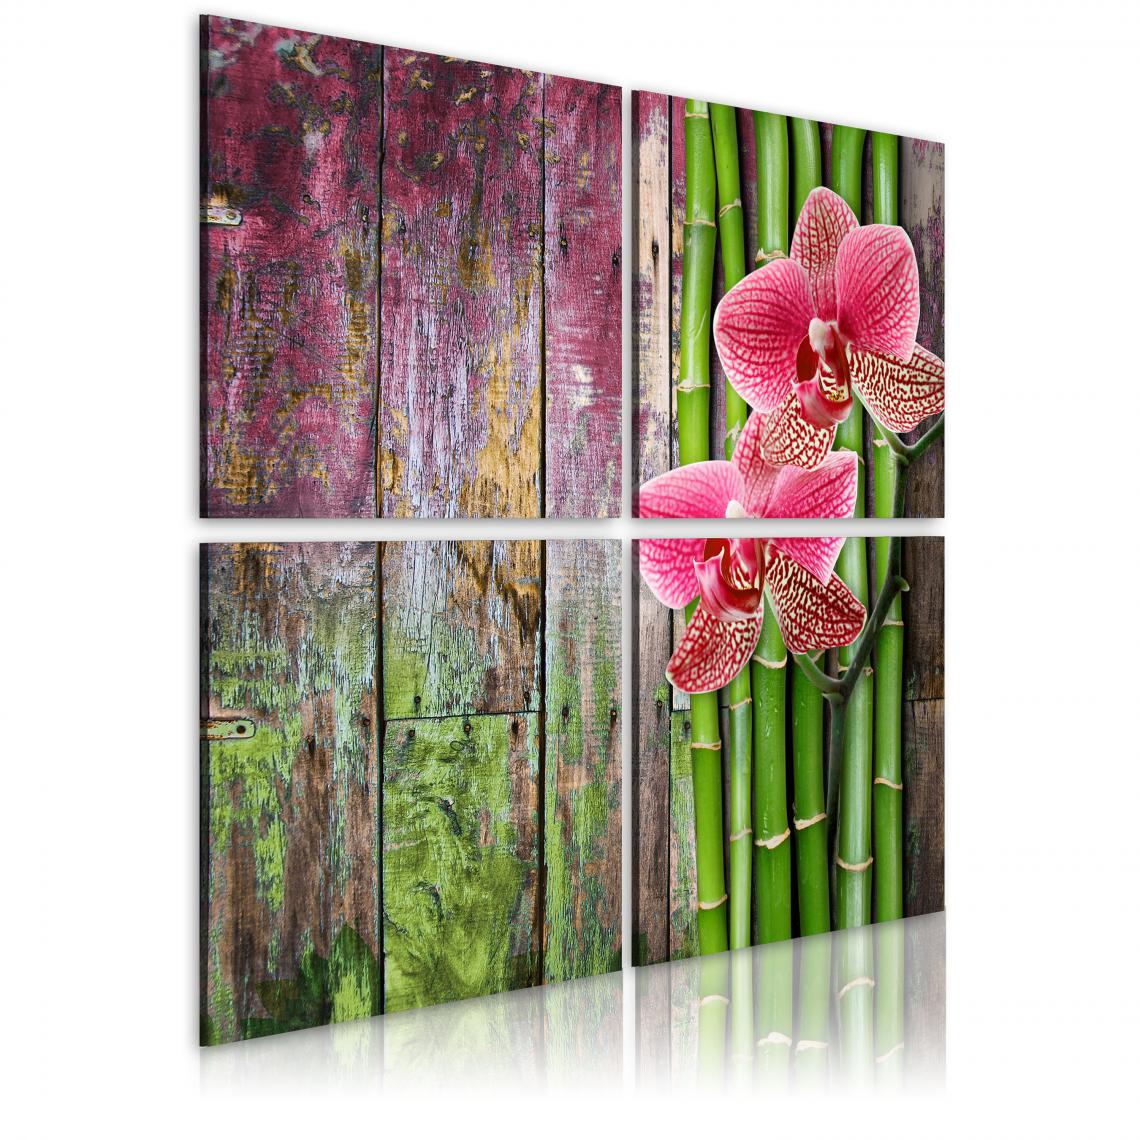 Decoshop26 - Tableau sur toile en 4 panneaux décoration murale image imprimée cadre en bois à suspendre Bambou et orchidée 90x90 cm 11_0008908 - Tableaux, peintures